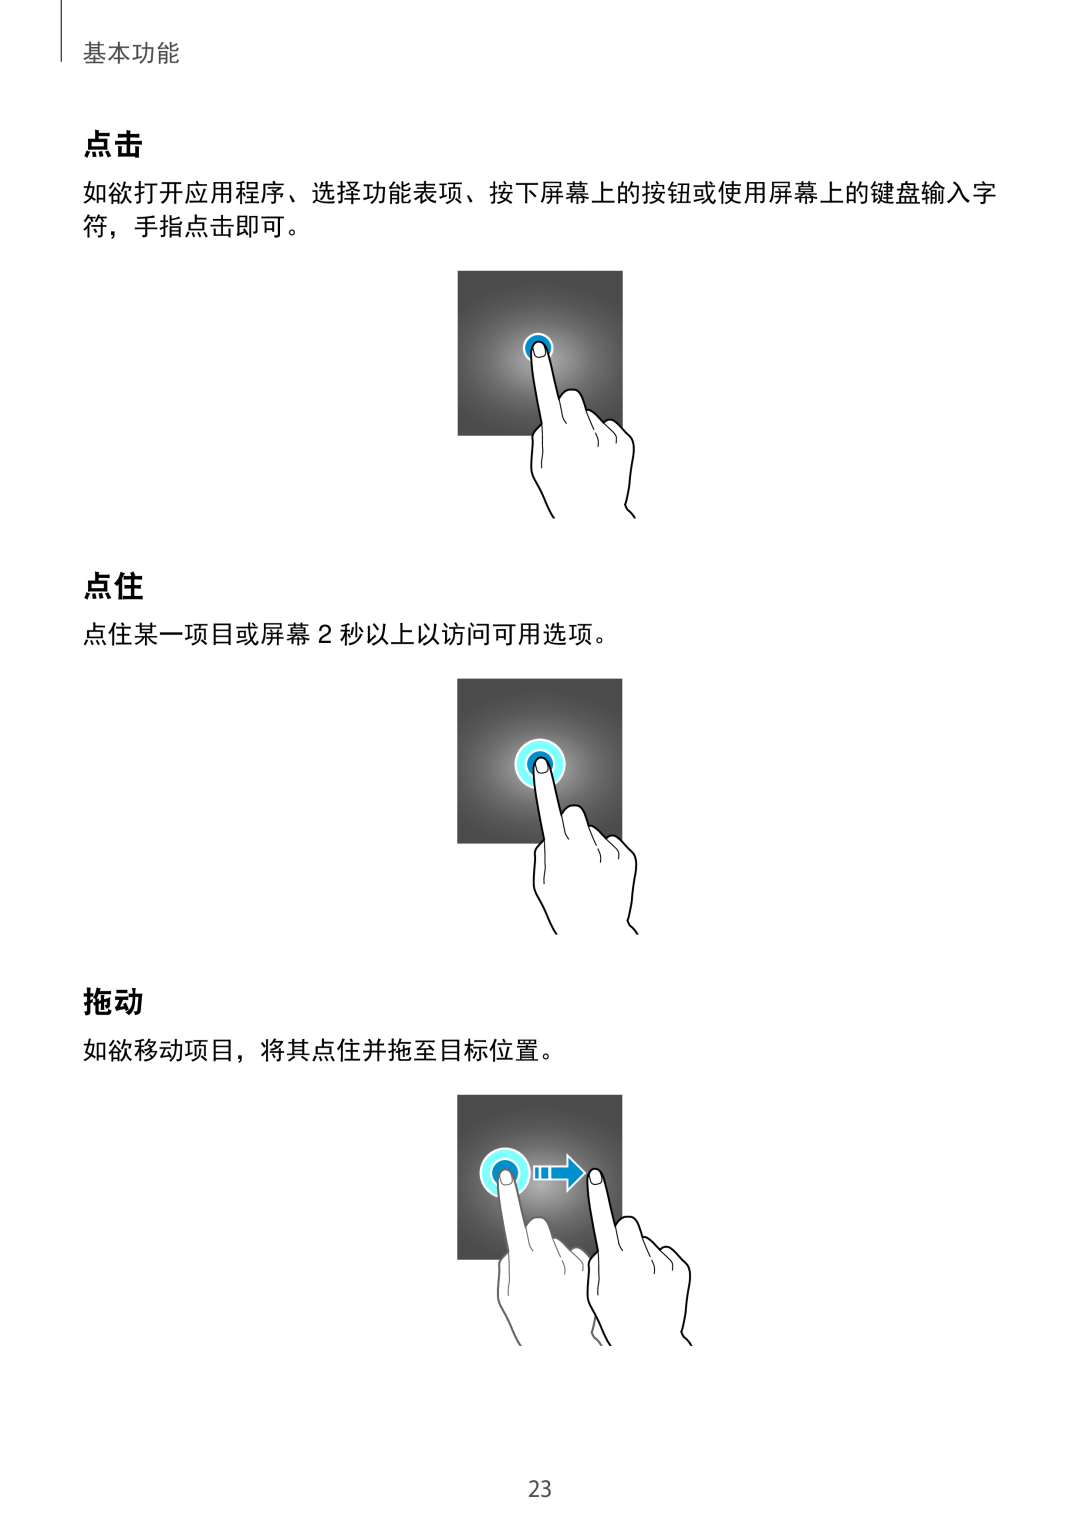 Samsung SM-A310FZKDXXV 点住某一项目或屏幕 2 秒以上以访问可用选项。, 如欲移动项目，将其点住并拖至目标位置。, 如欲打开应用程序、选择功能表项、按下屏幕上的按钮或使用屏幕上的键盘输入字 符，手指点击即可。, 基本功能 